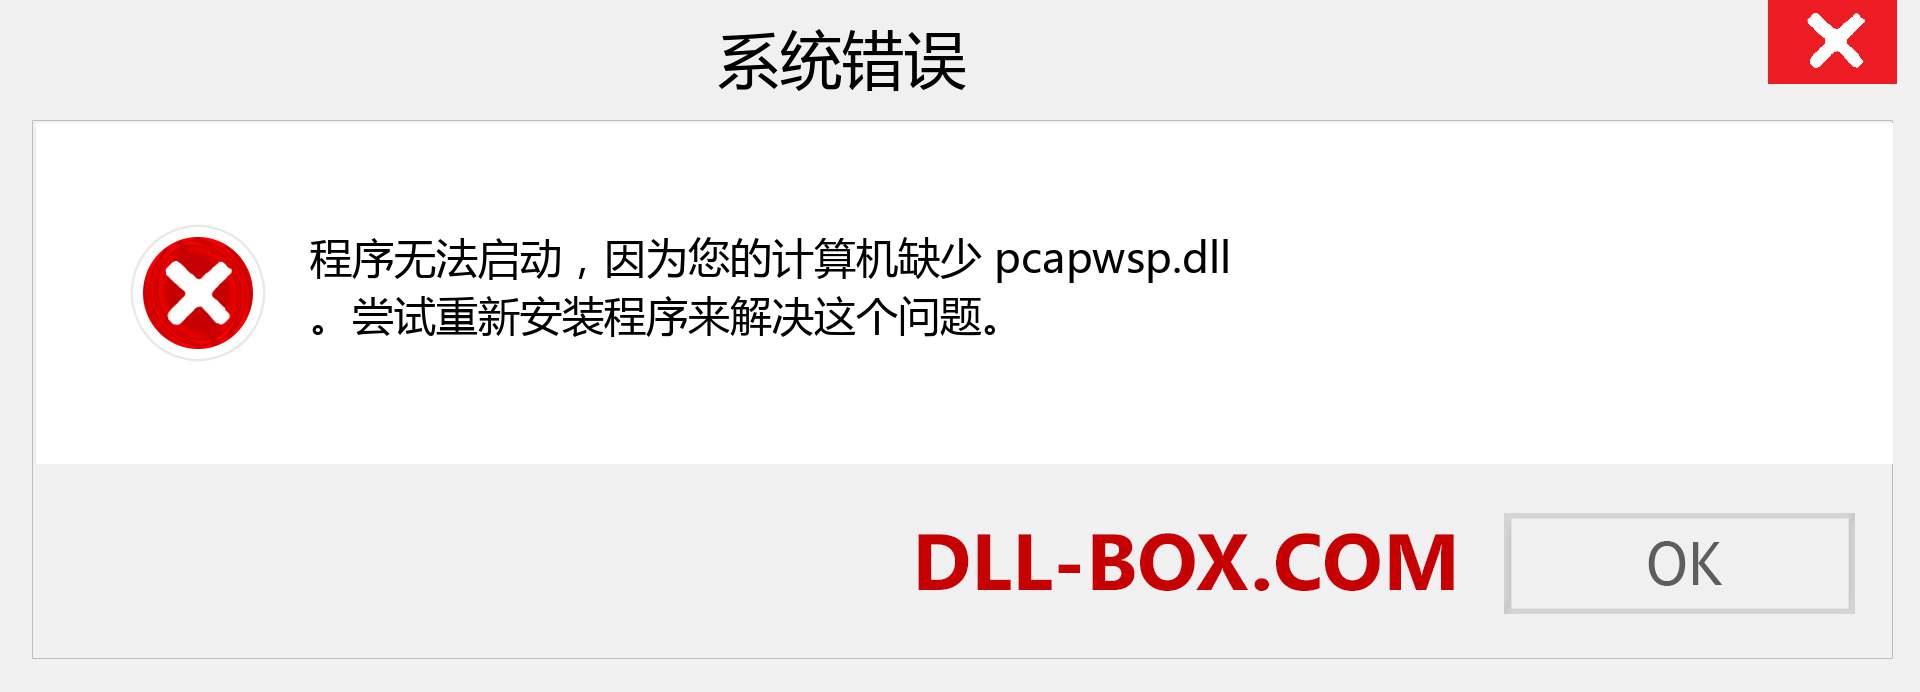 pcapwsp.dll 文件丢失？。 适用于 Windows 7、8、10 的下载 - 修复 Windows、照片、图像上的 pcapwsp dll 丢失错误